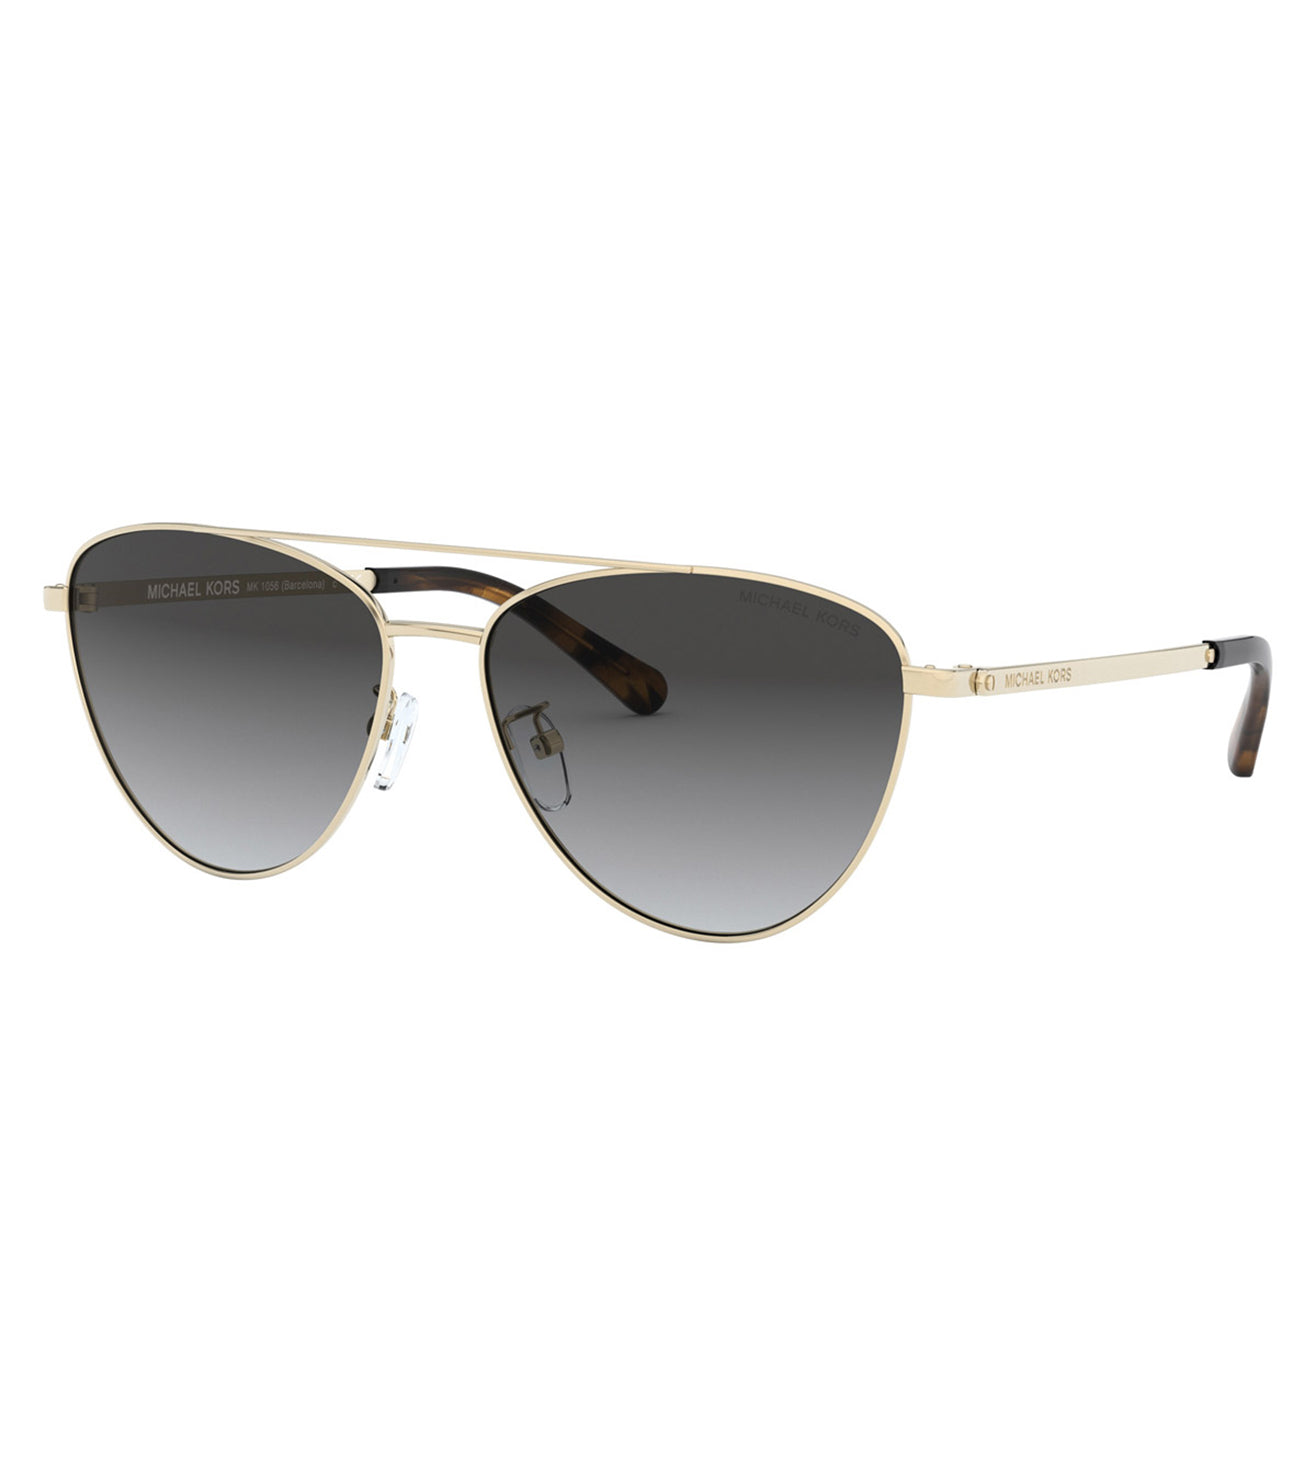 Michael Kors Women's Dark Gray Gradient Aviator Sunglasses